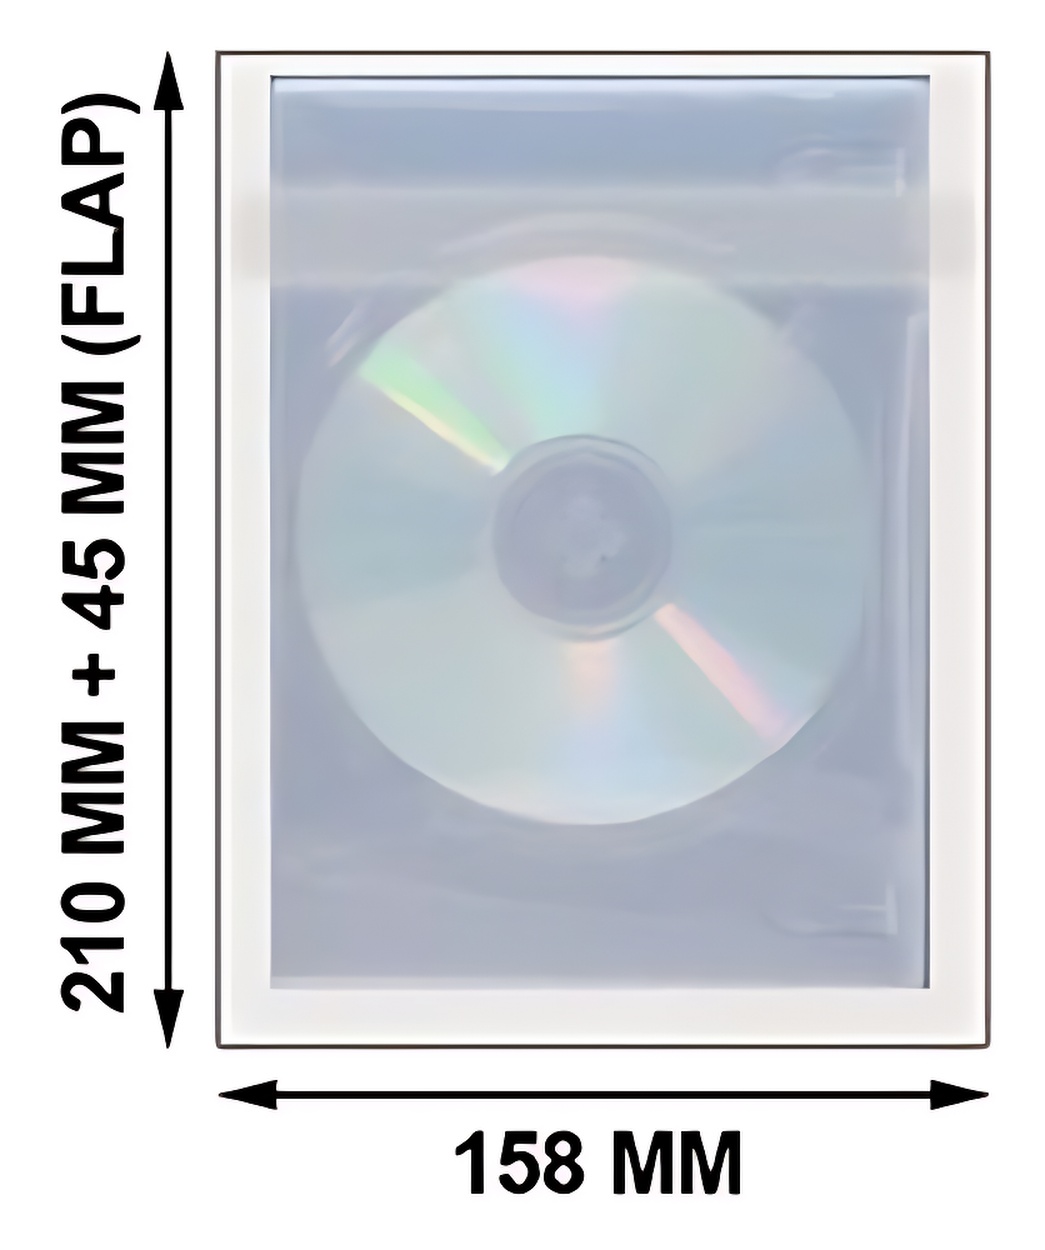 400 OPP Plastic Wrap Bag for 5/6 Disc DVD Cases 22mm